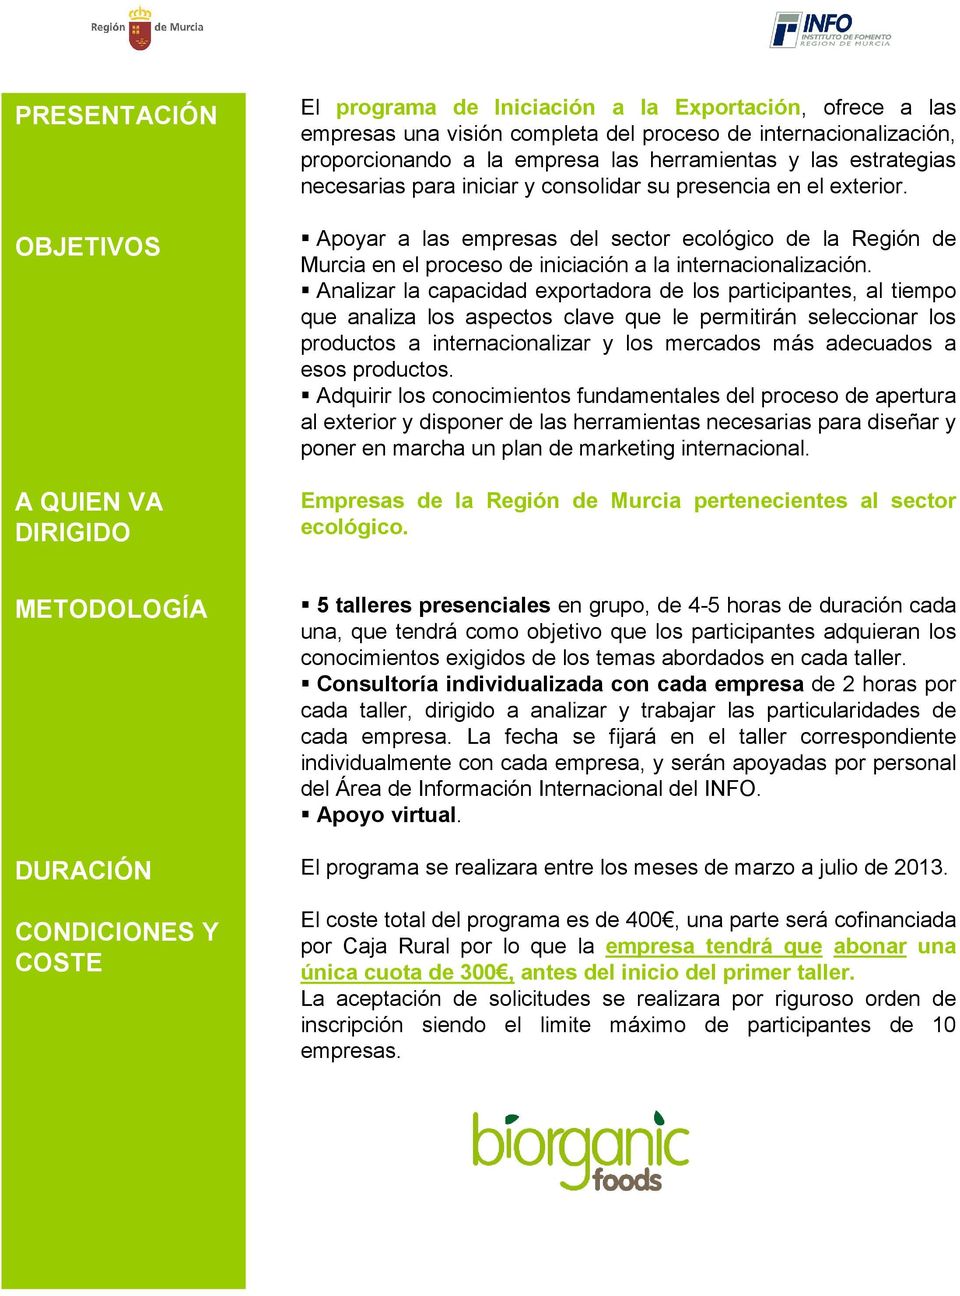 Apoyar a las empresas del sector ecológico de la Región de Murcia en el proceso de iniciación a la internacionalización.